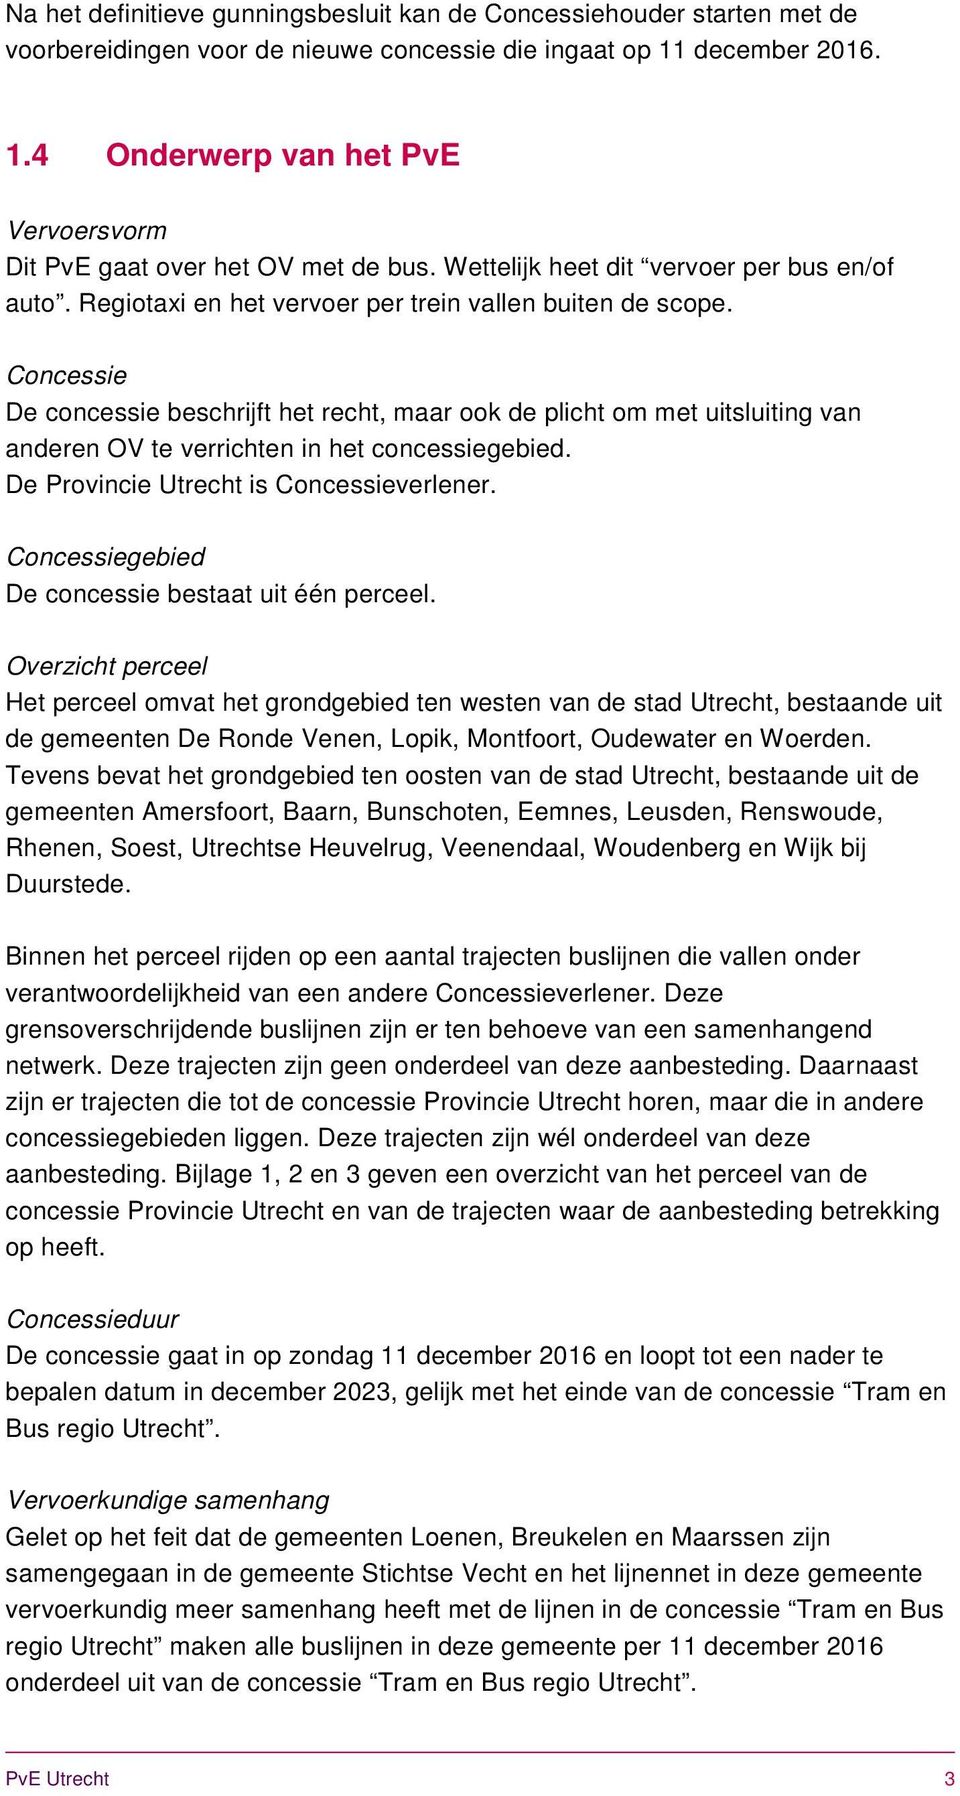 Concessie De concessie beschrijft het recht, maar ook de plicht om met uitsluiting van anderen OV te verrichten in het concessiegebied. De Provincie Utrecht is Concessieverlener.